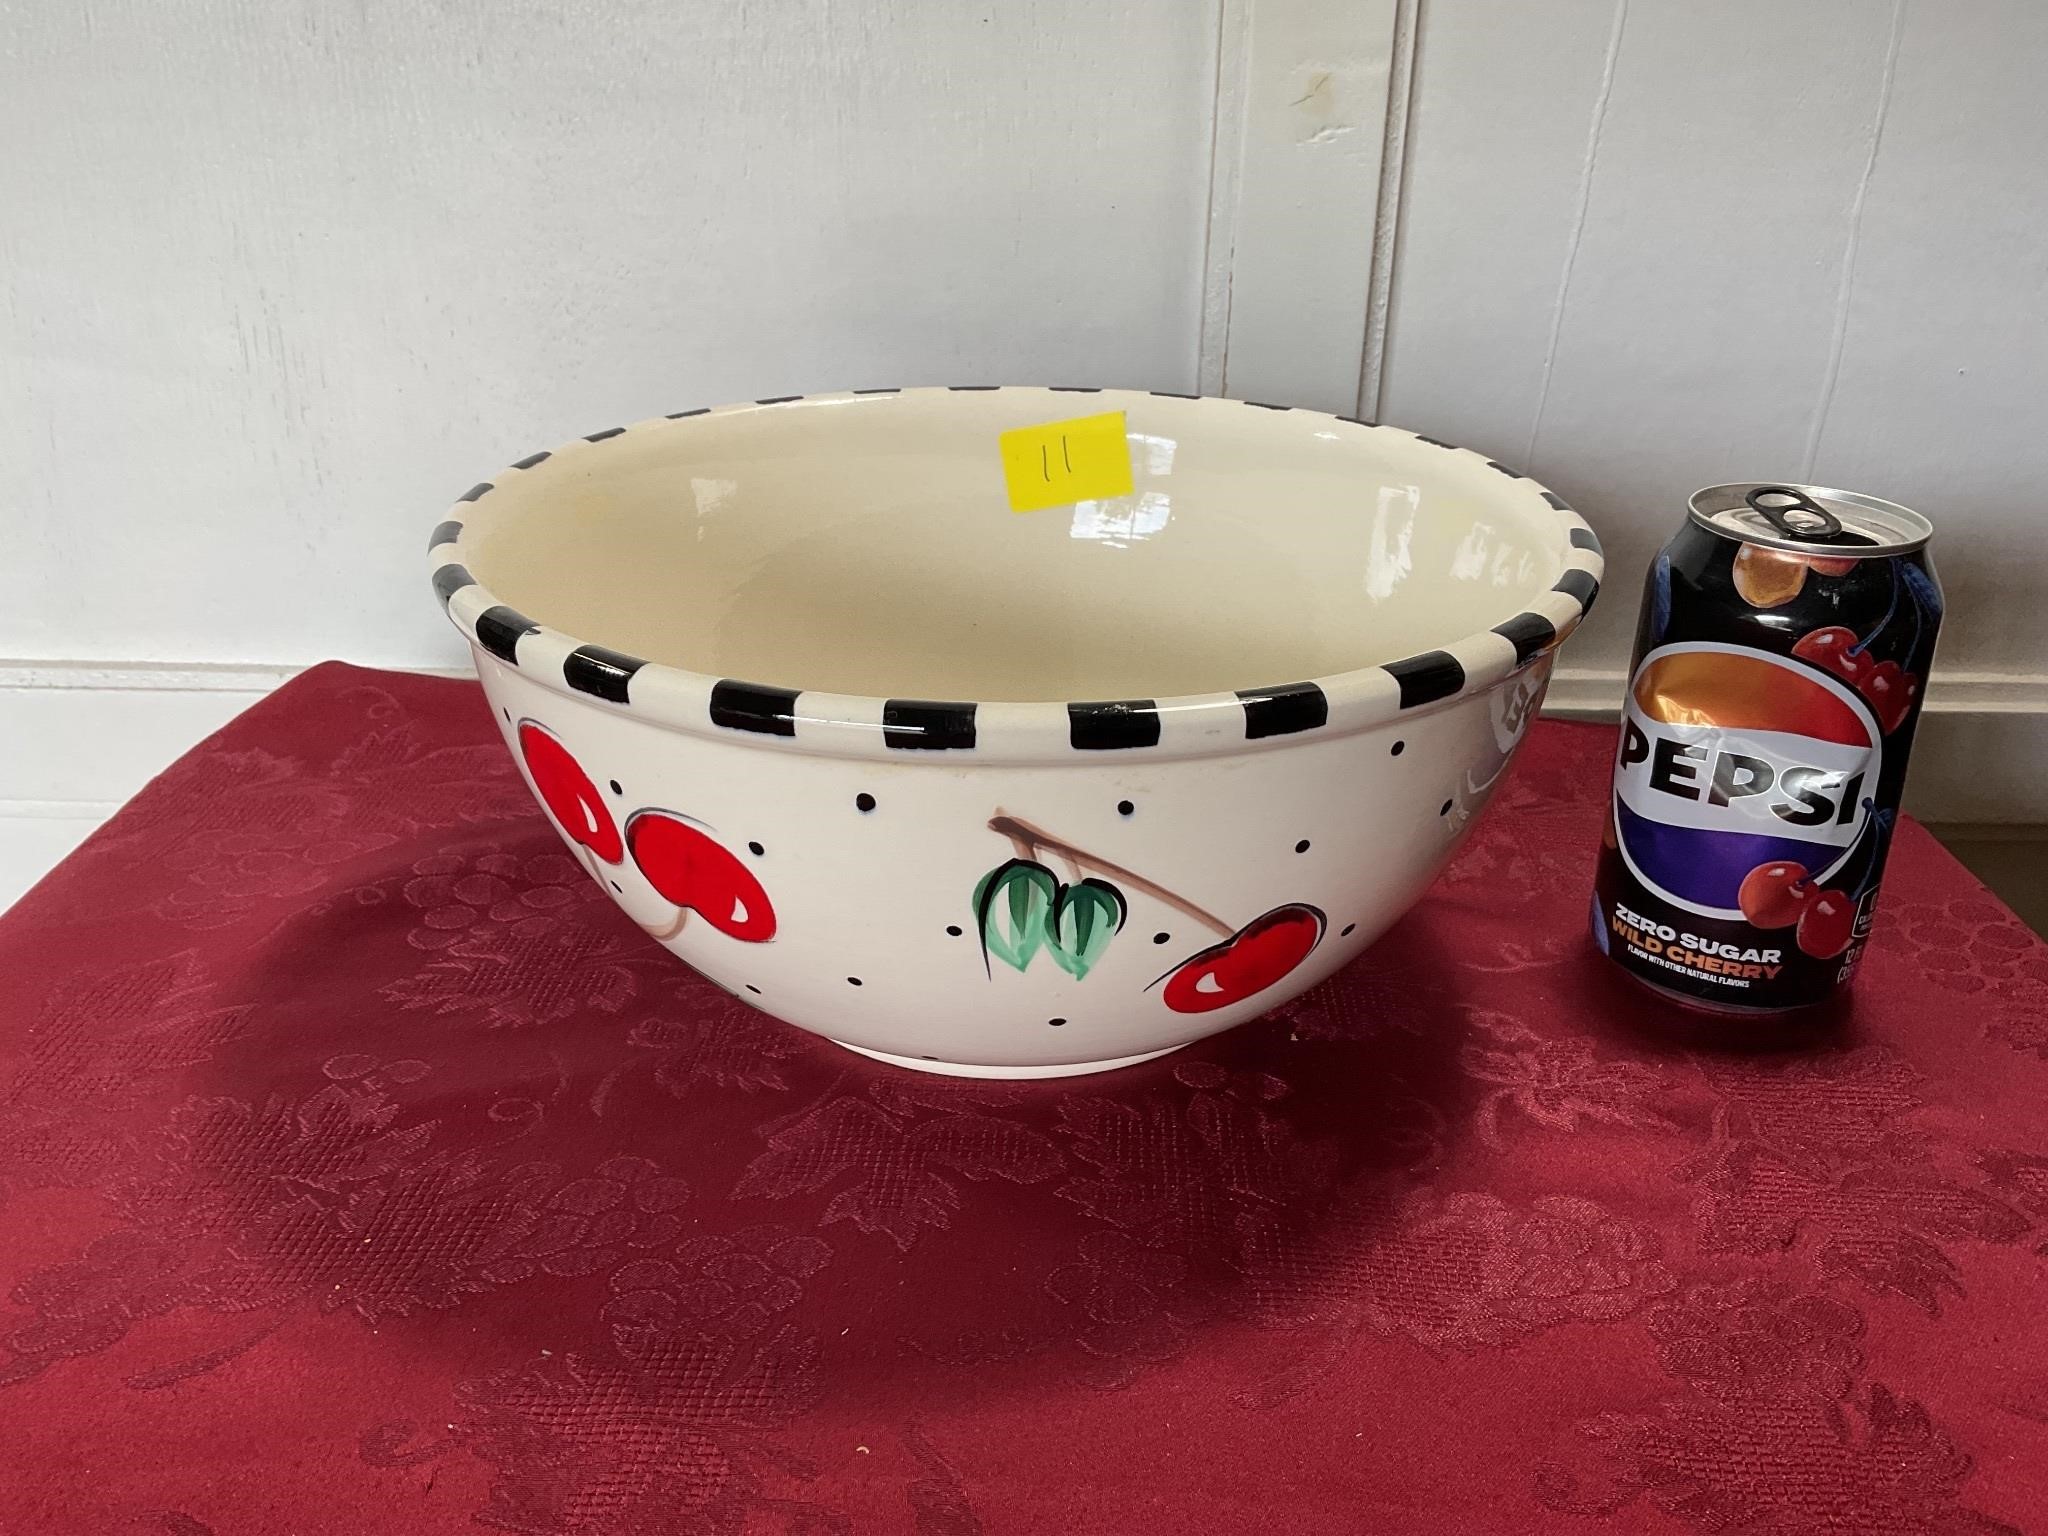 Large cherry fruit bowl GAETANO pottery